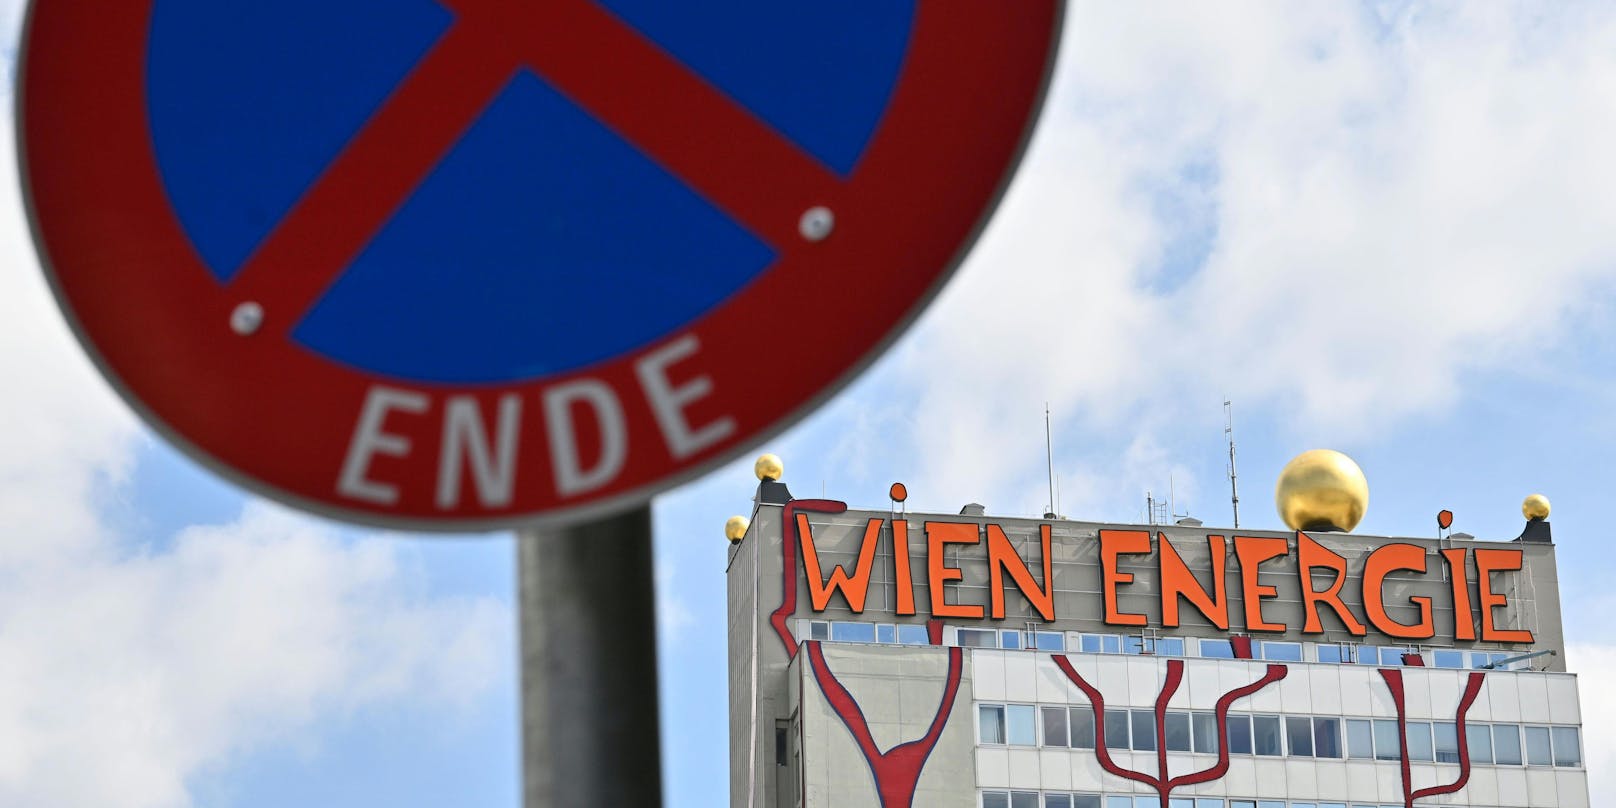 Finanzielle Schieflage: Der Finanzminister ortet Spekulationen bei der Wien Energie. "Das muss aufgeklärt werden", so Magnus Brunner.